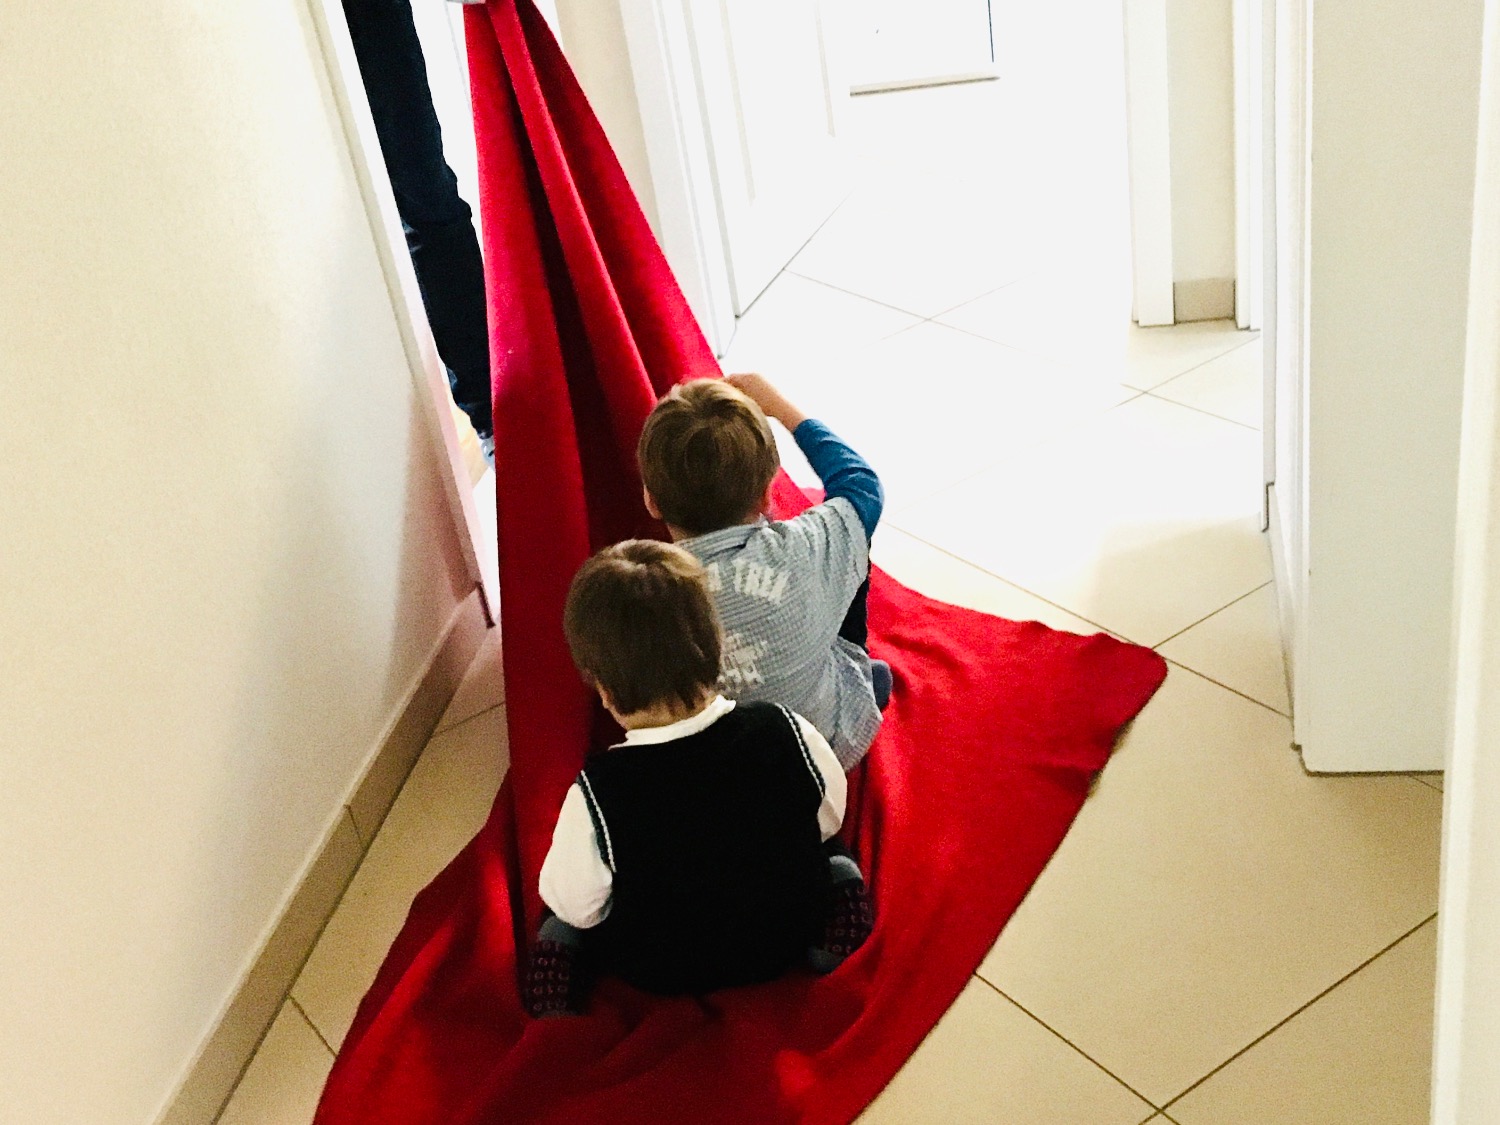 Titelbild zur Idee für die Beschäftigung mit Kindern 'Decken-Schlitten fahren'